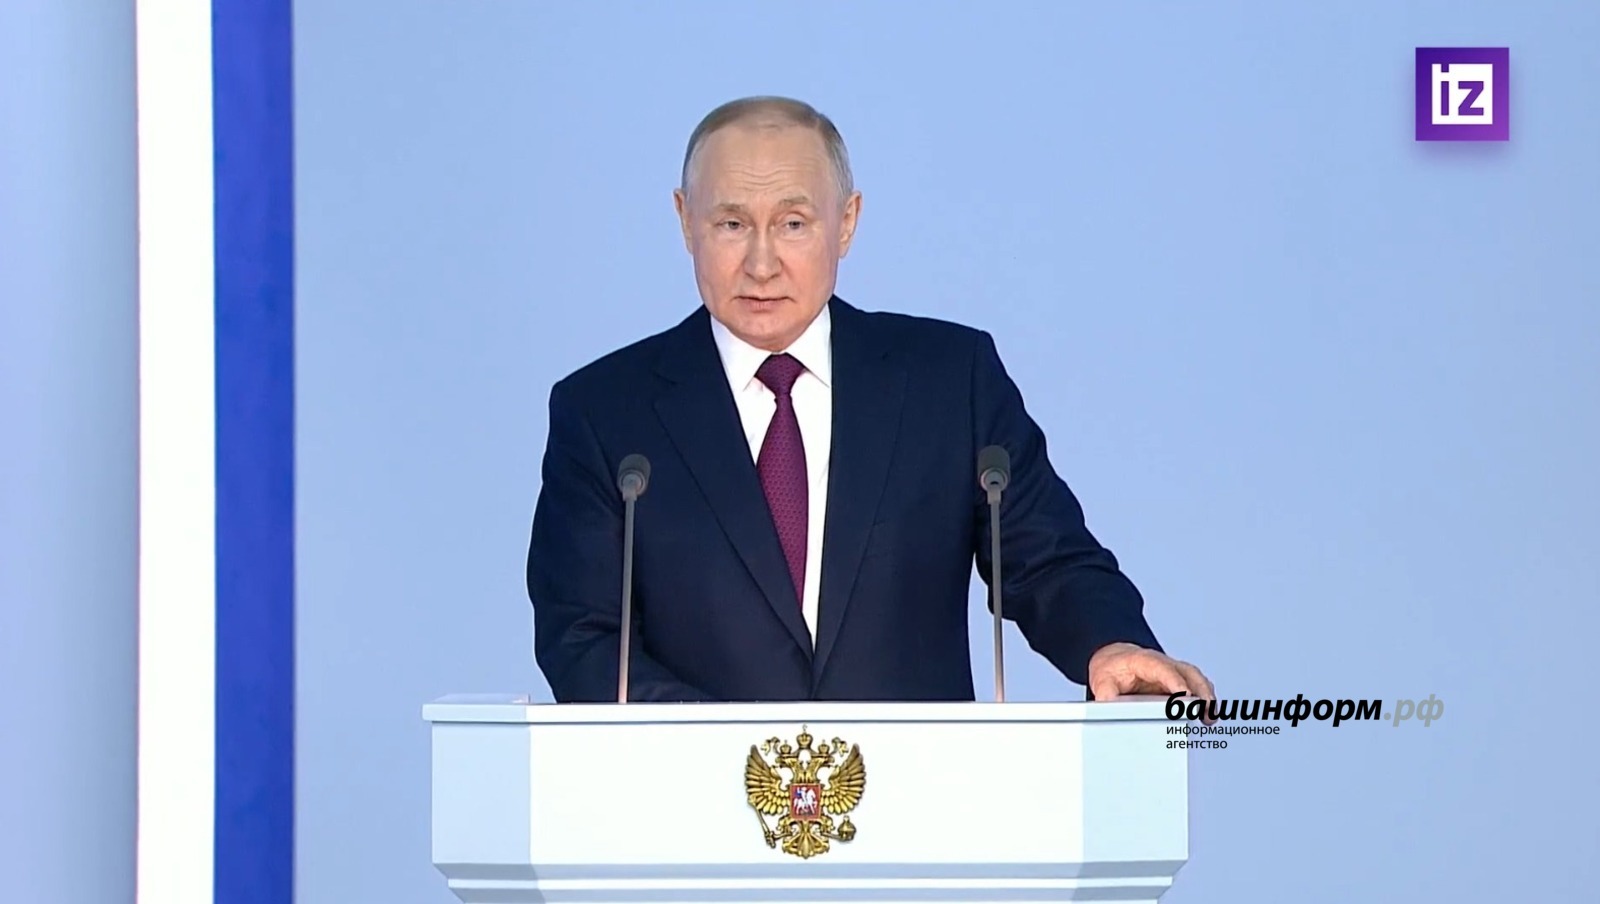 Владимир Путин Рәсәй халҡына ҡаһарманлыҡ һәм тәүәкәллек өсөн рәхмәт белдерҙе